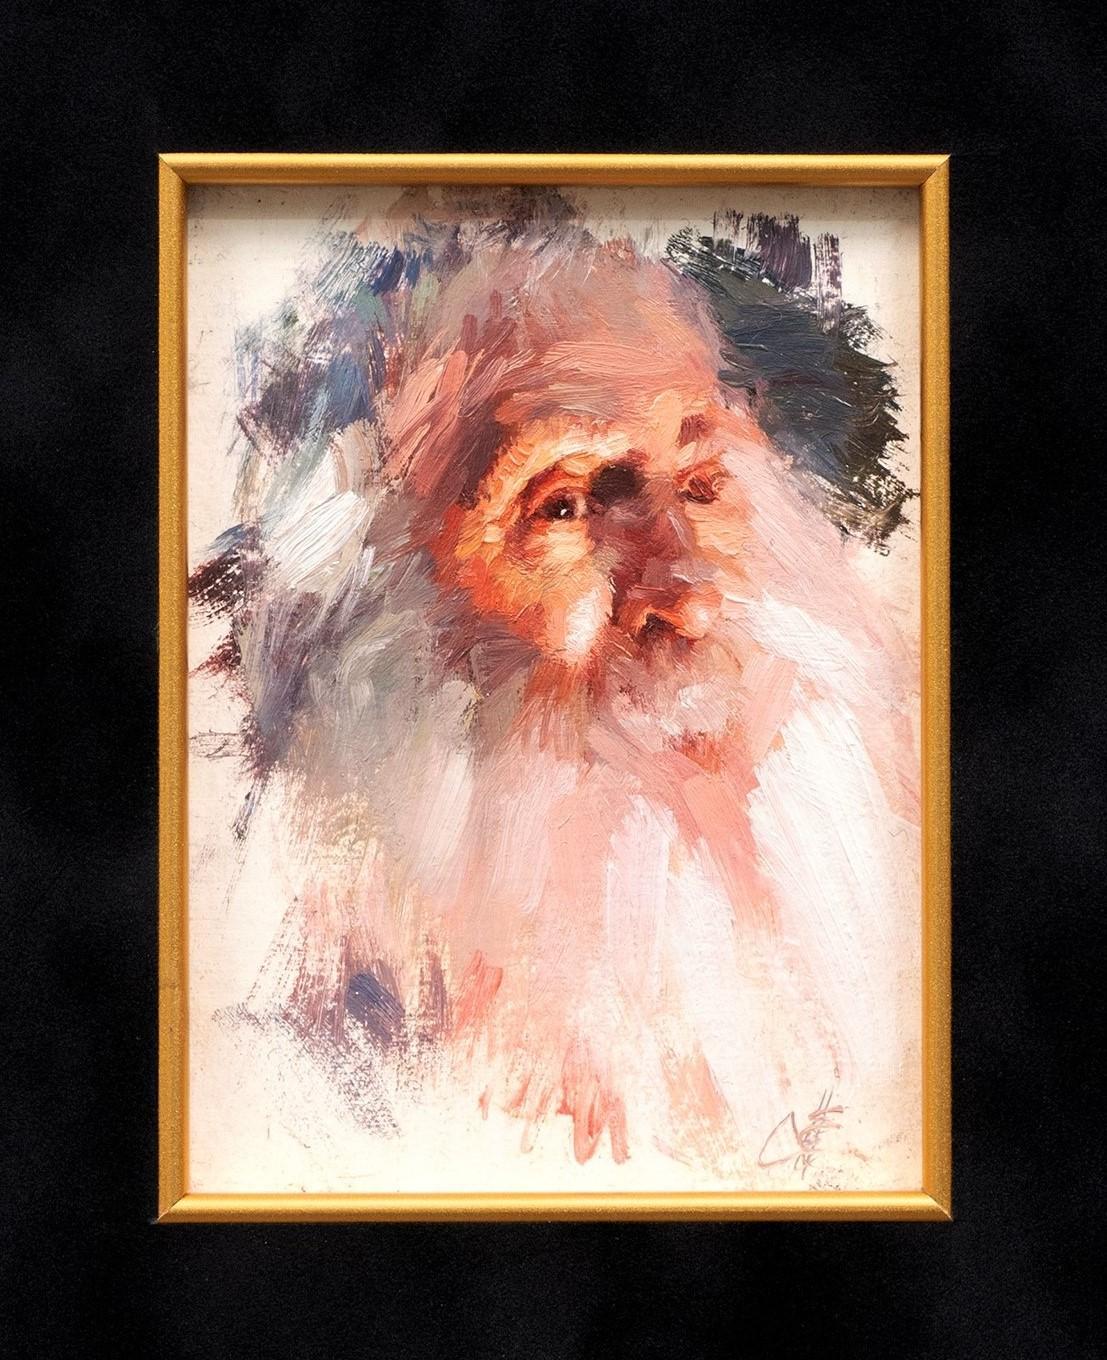 "Porträt des Weisen" 
Emin Abbasov (geb. 1950, Aserbaidschan)
Öl auf Karton, signiert
4 7/8 x 3 1/2 (16 x 14 1/2 Rahmen) Zoll

Emin Abbasov ist ein klassisch ausgebildeter Maler, der an der M.M. ein Meisterdiplom mit Auszeichnung für hohe